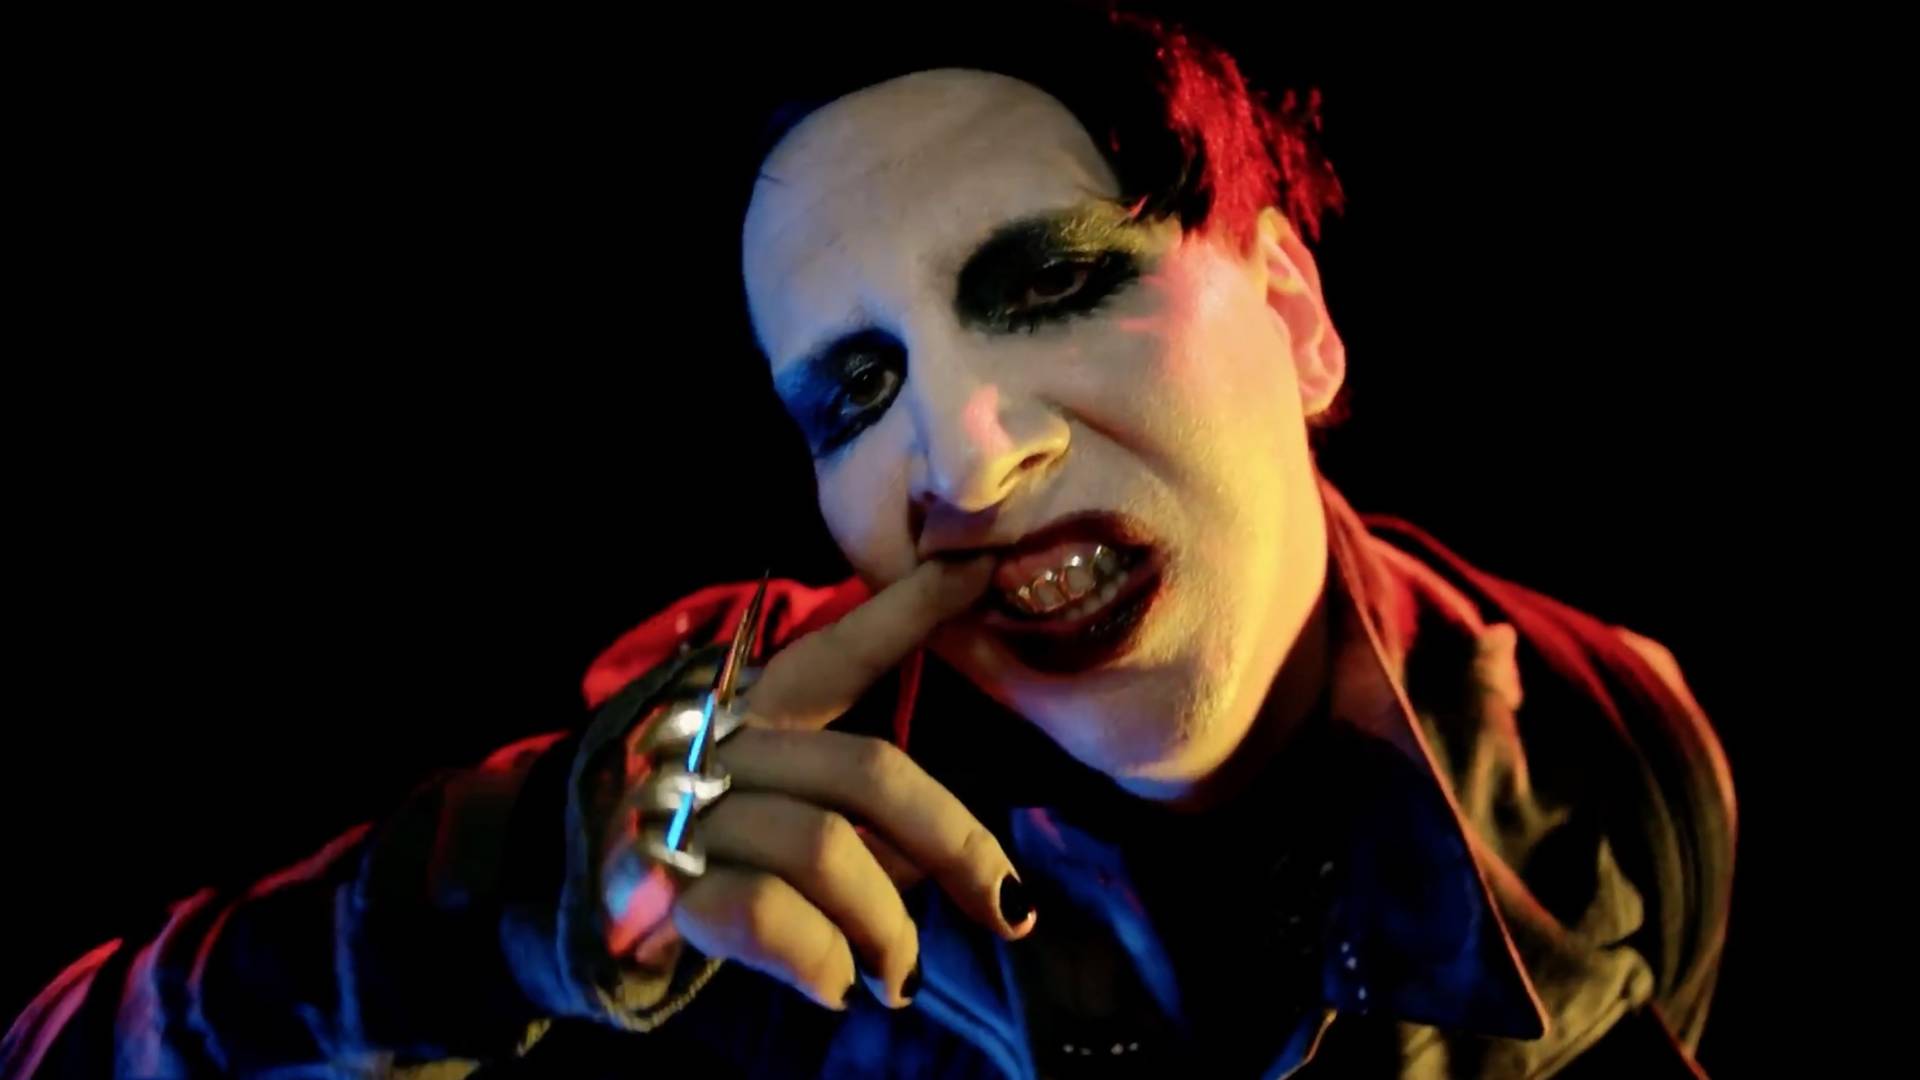 Krzyże, krzyki, zwłoki bez głowy – tak teraz wygląda Instagram Marilyna Mansona